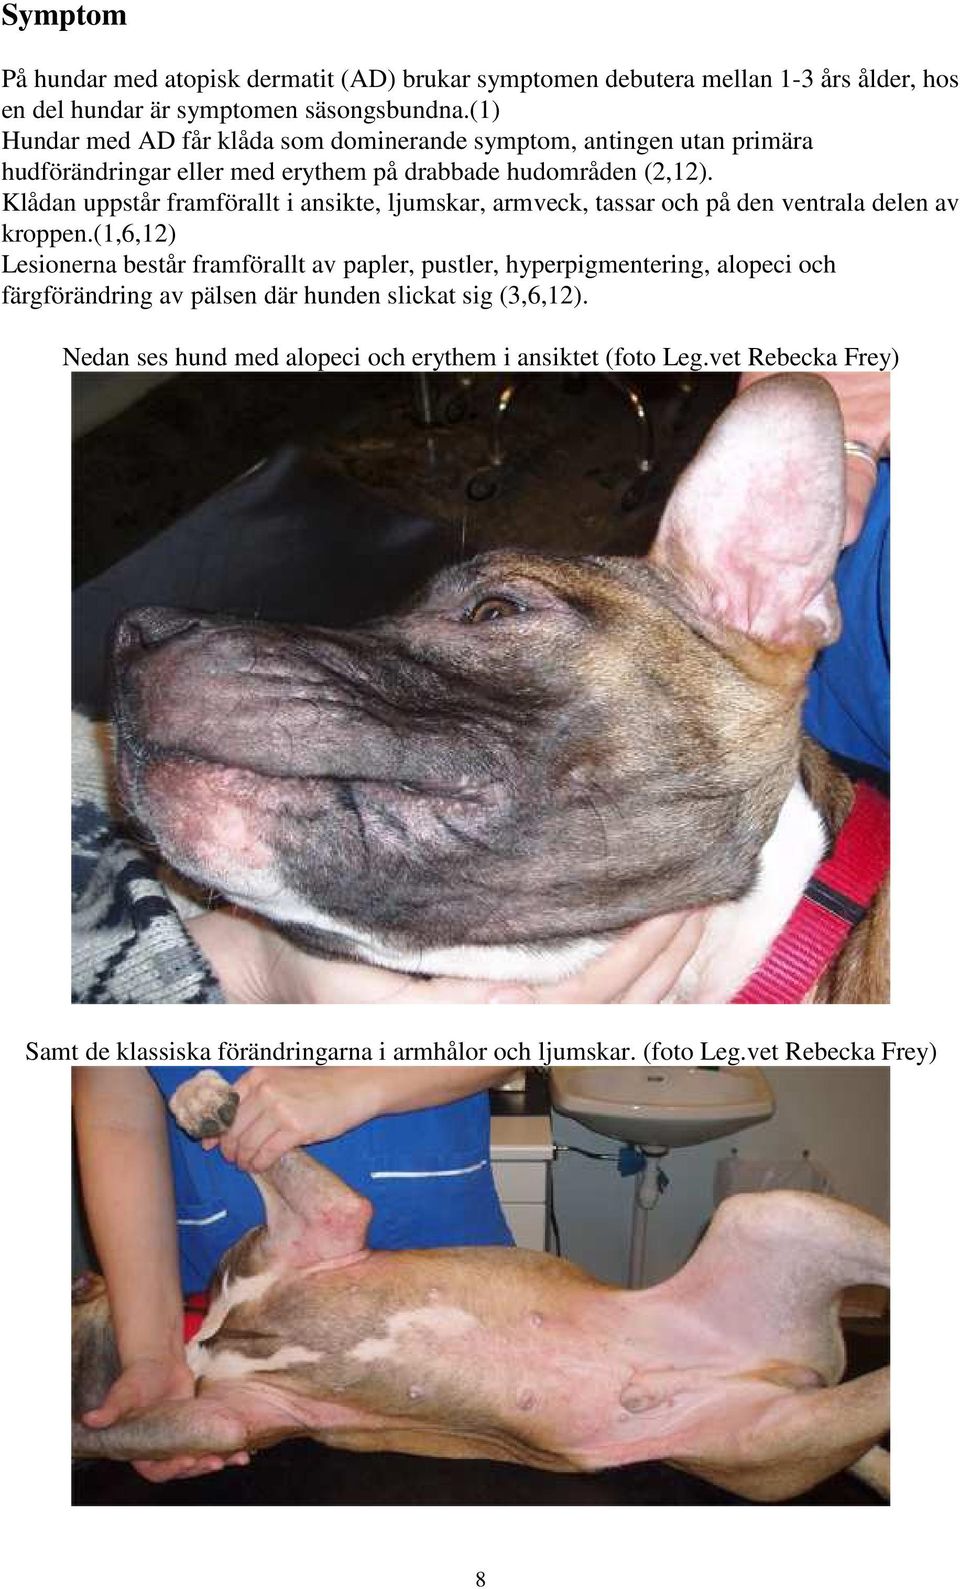 Atopisk dermatit hos hund - PDF Gratis nedladdning